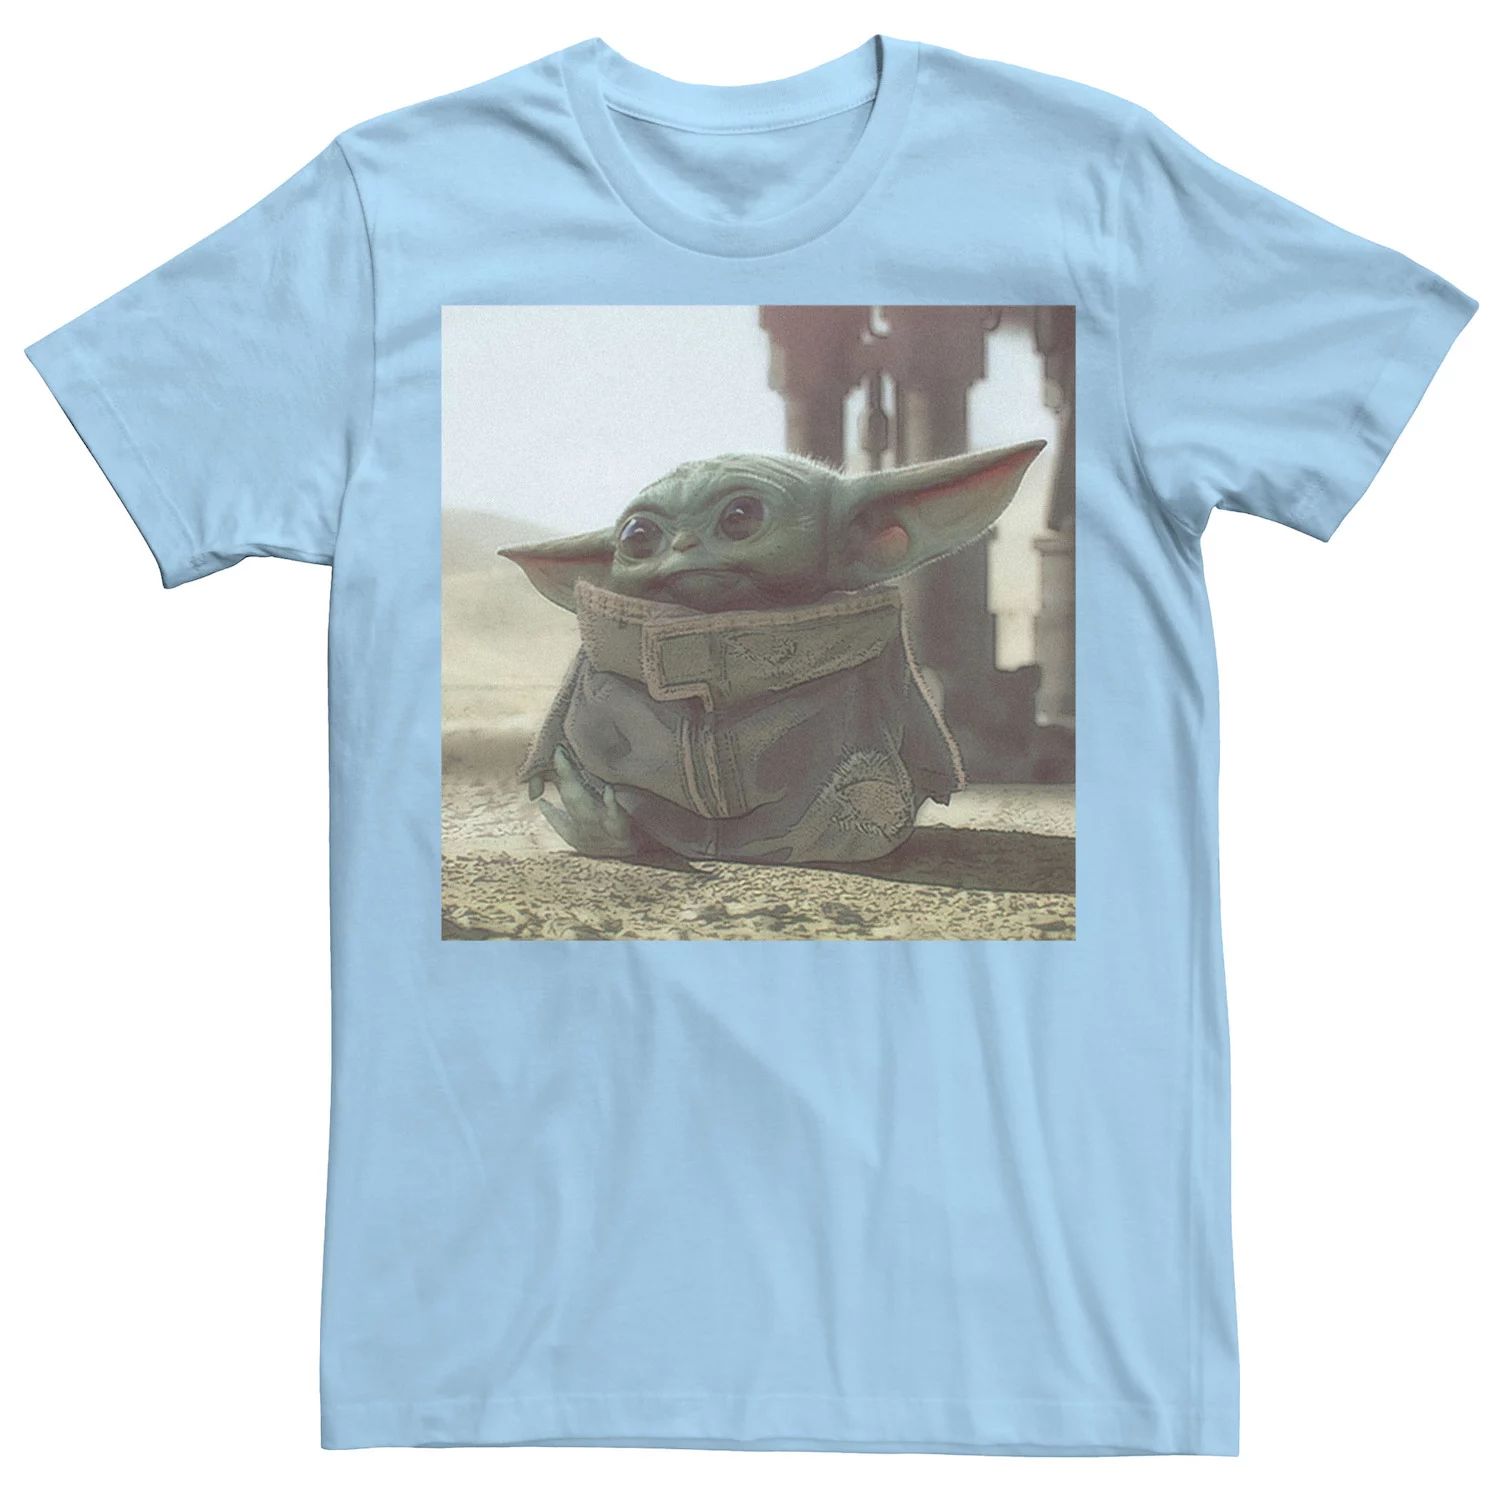 Мужская футболка с плакатом «Звездные войны, мандалорец, ребенок, известный как Малыш Йода» Star Wars, светло-синий sandokey galaxy star light